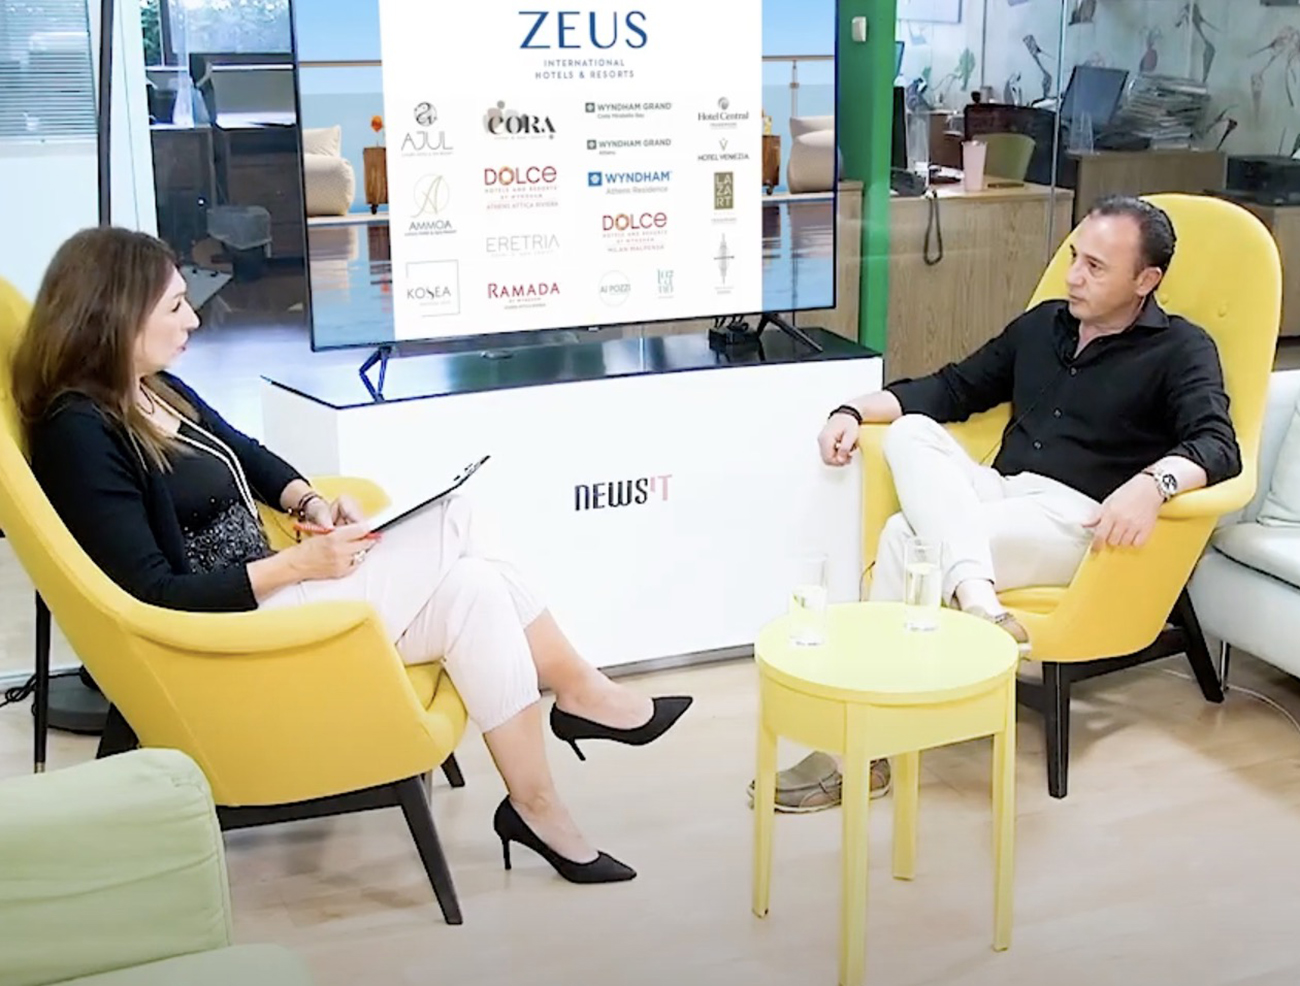 Πολυτελείς διακοπές τη φετινή σεζόν: Συνέντευξη με τον Χάρη Σιγανό, CEO της Zeus International Hotels & Resorts